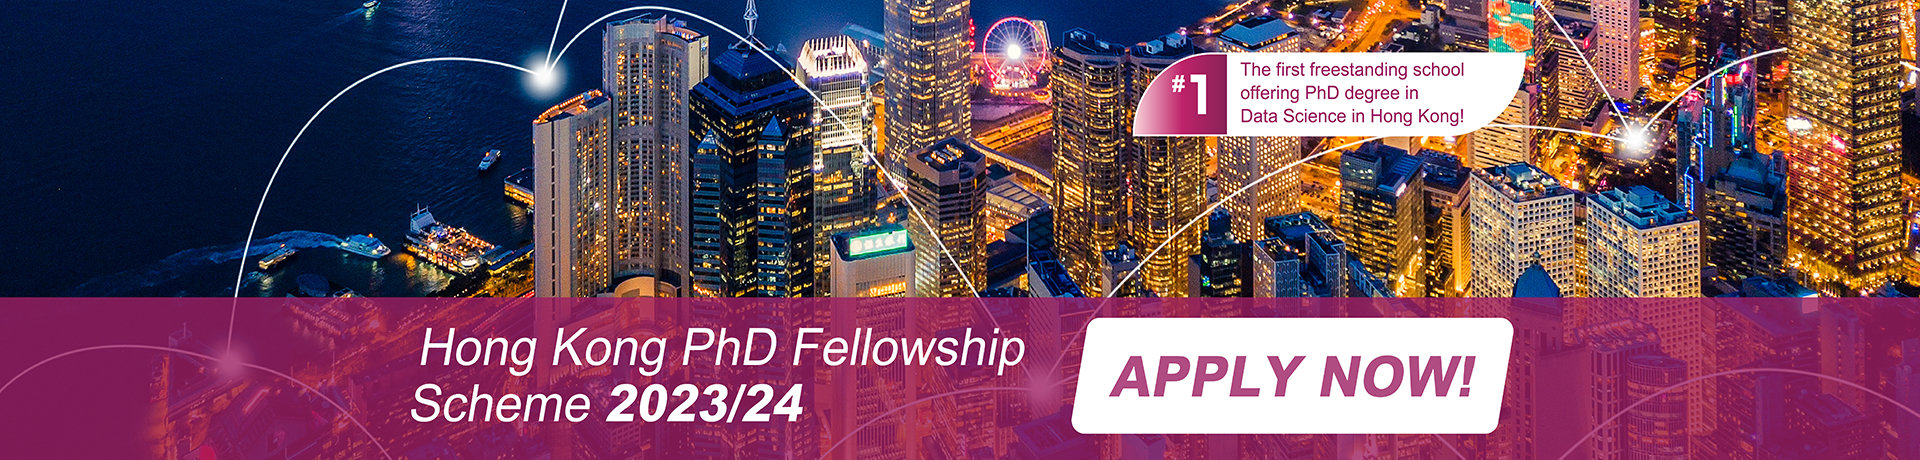 Hong Kong PhD Fellowship Scheme 2023/24